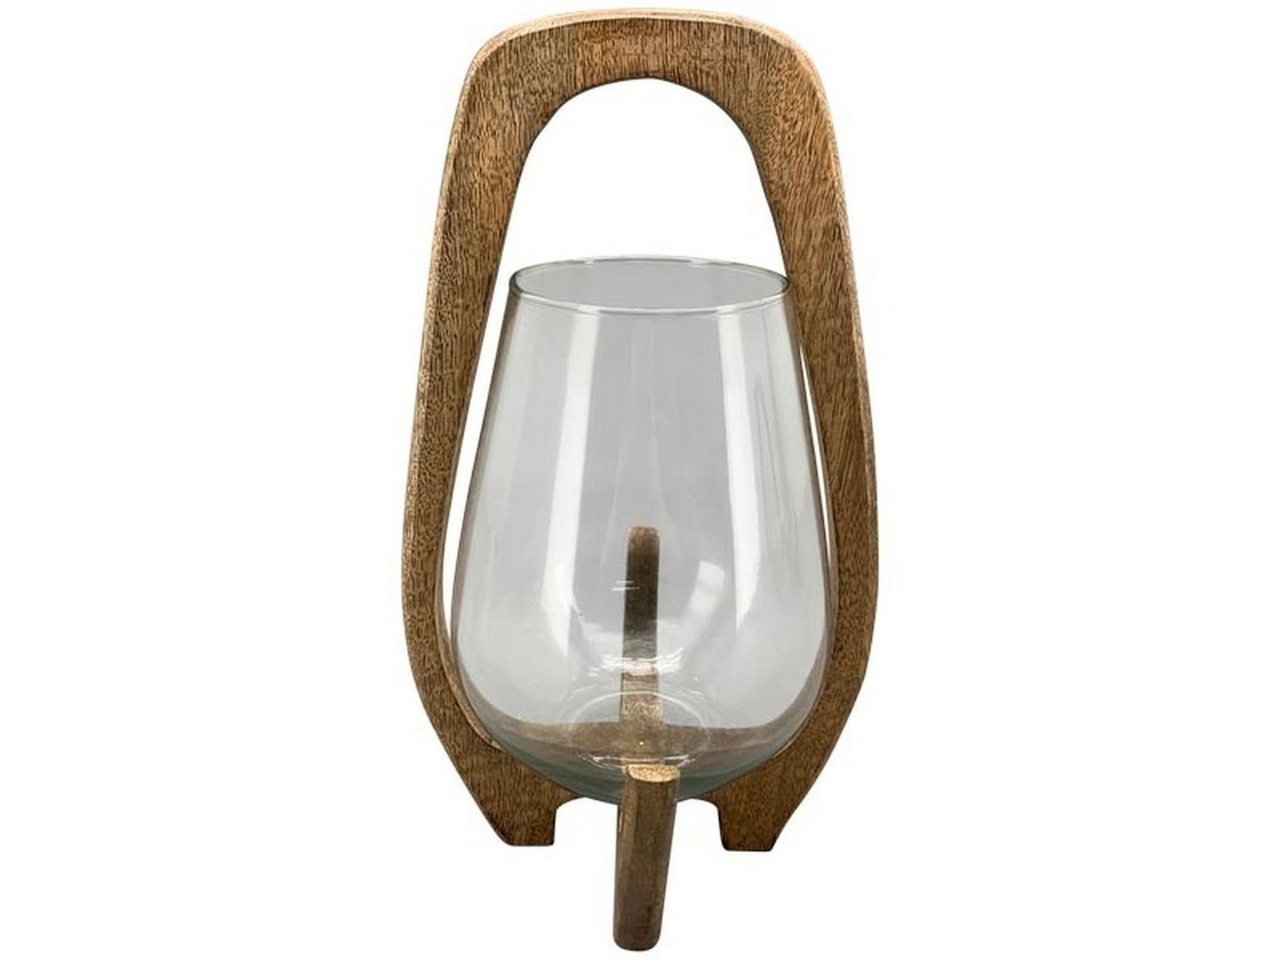 Small-Preis Teelichthalter Windlicht aus Holz mit Glaseinsatz in 3 Größen wählbar von Small-Preis